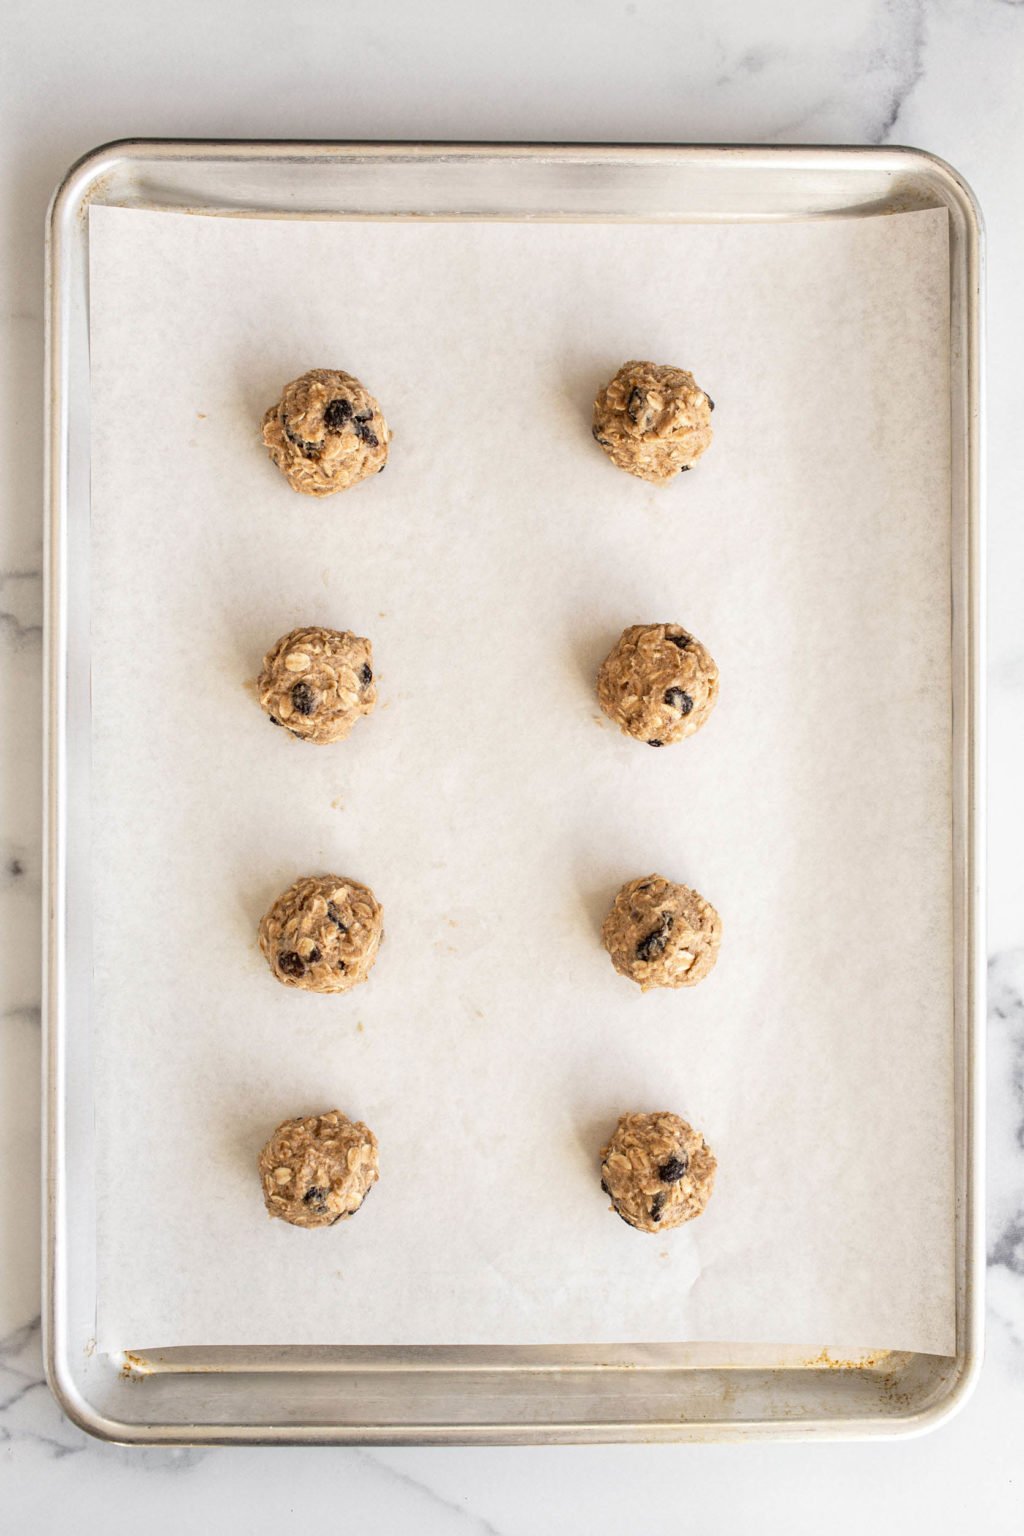 Des boules de pâte à biscuits bien rondes reposent sur une plaque à pâtisserie recouverte de papier sulfurisé.